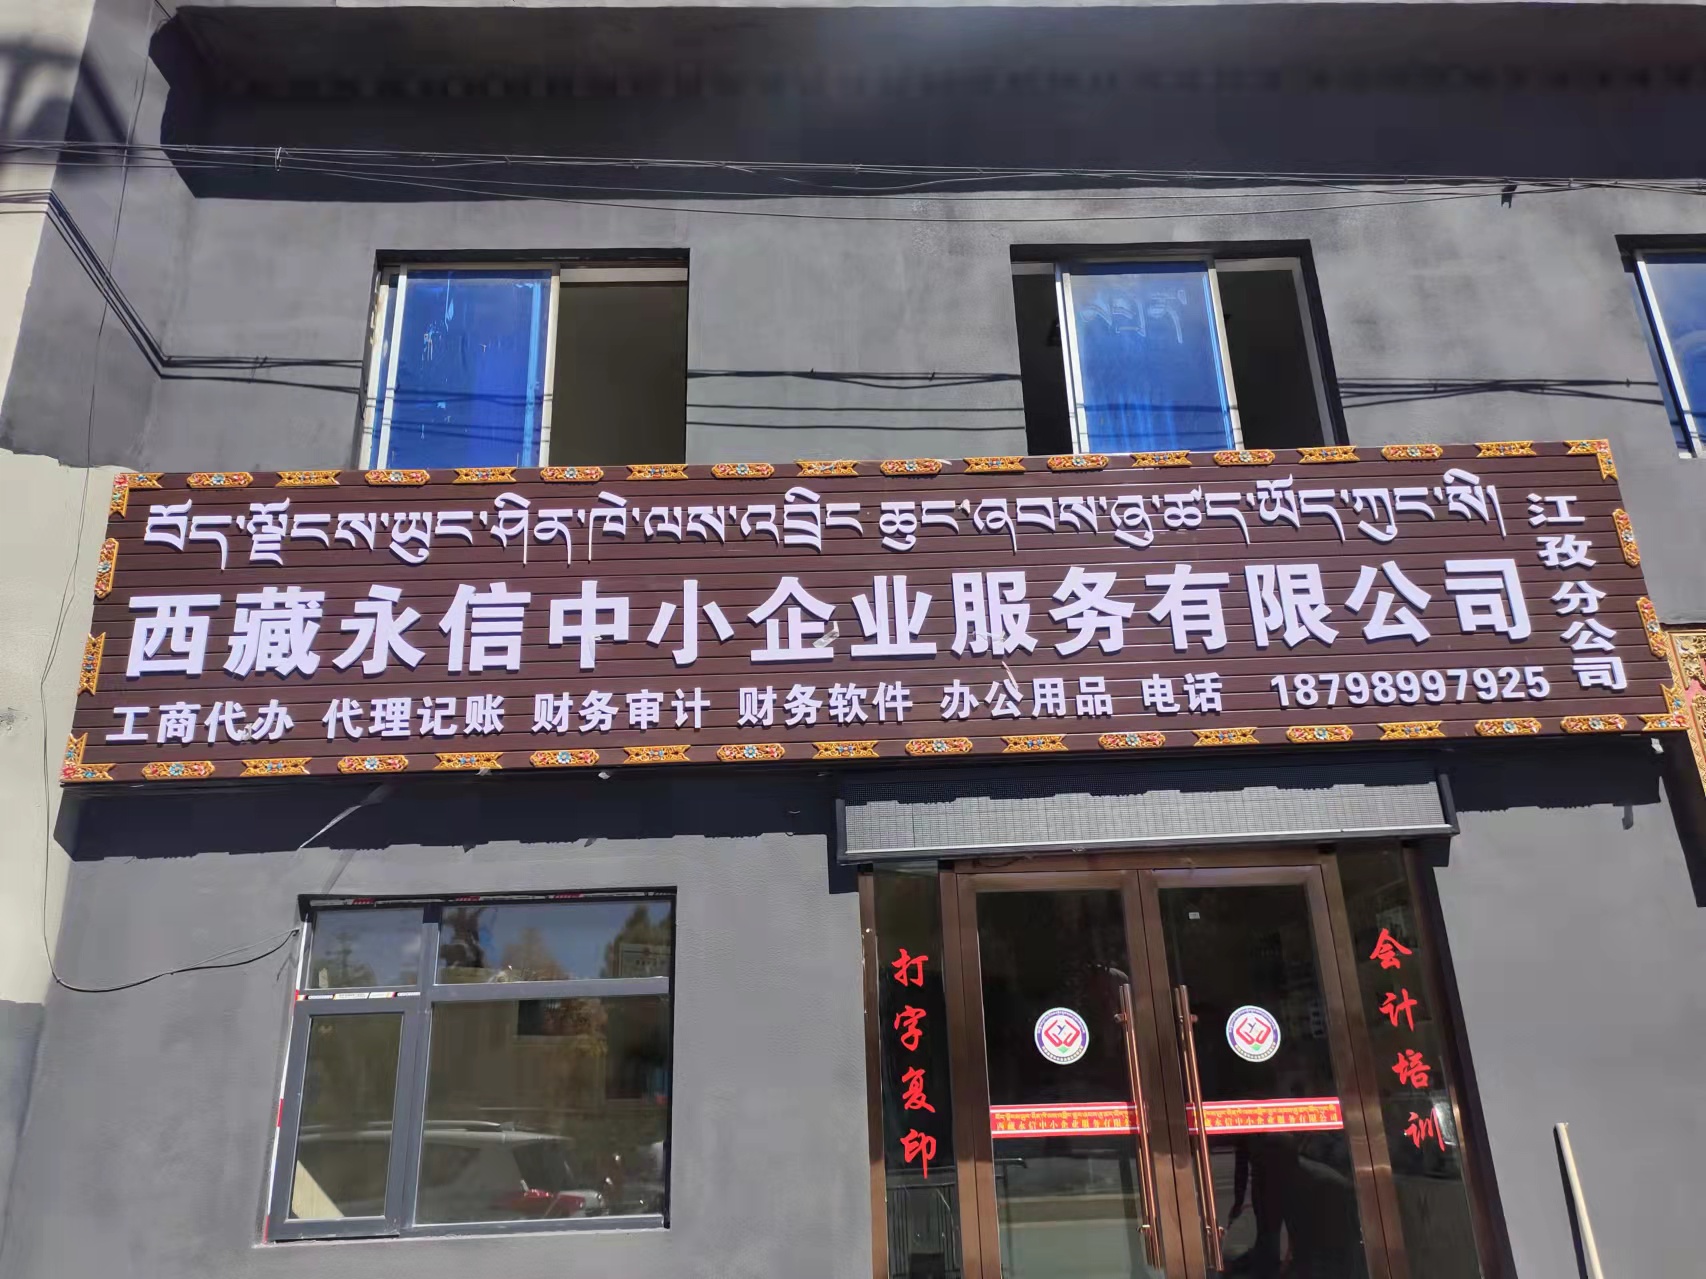 西藏永信中小企业服务有限公司江孜分公司10月12日正式开业啦◆